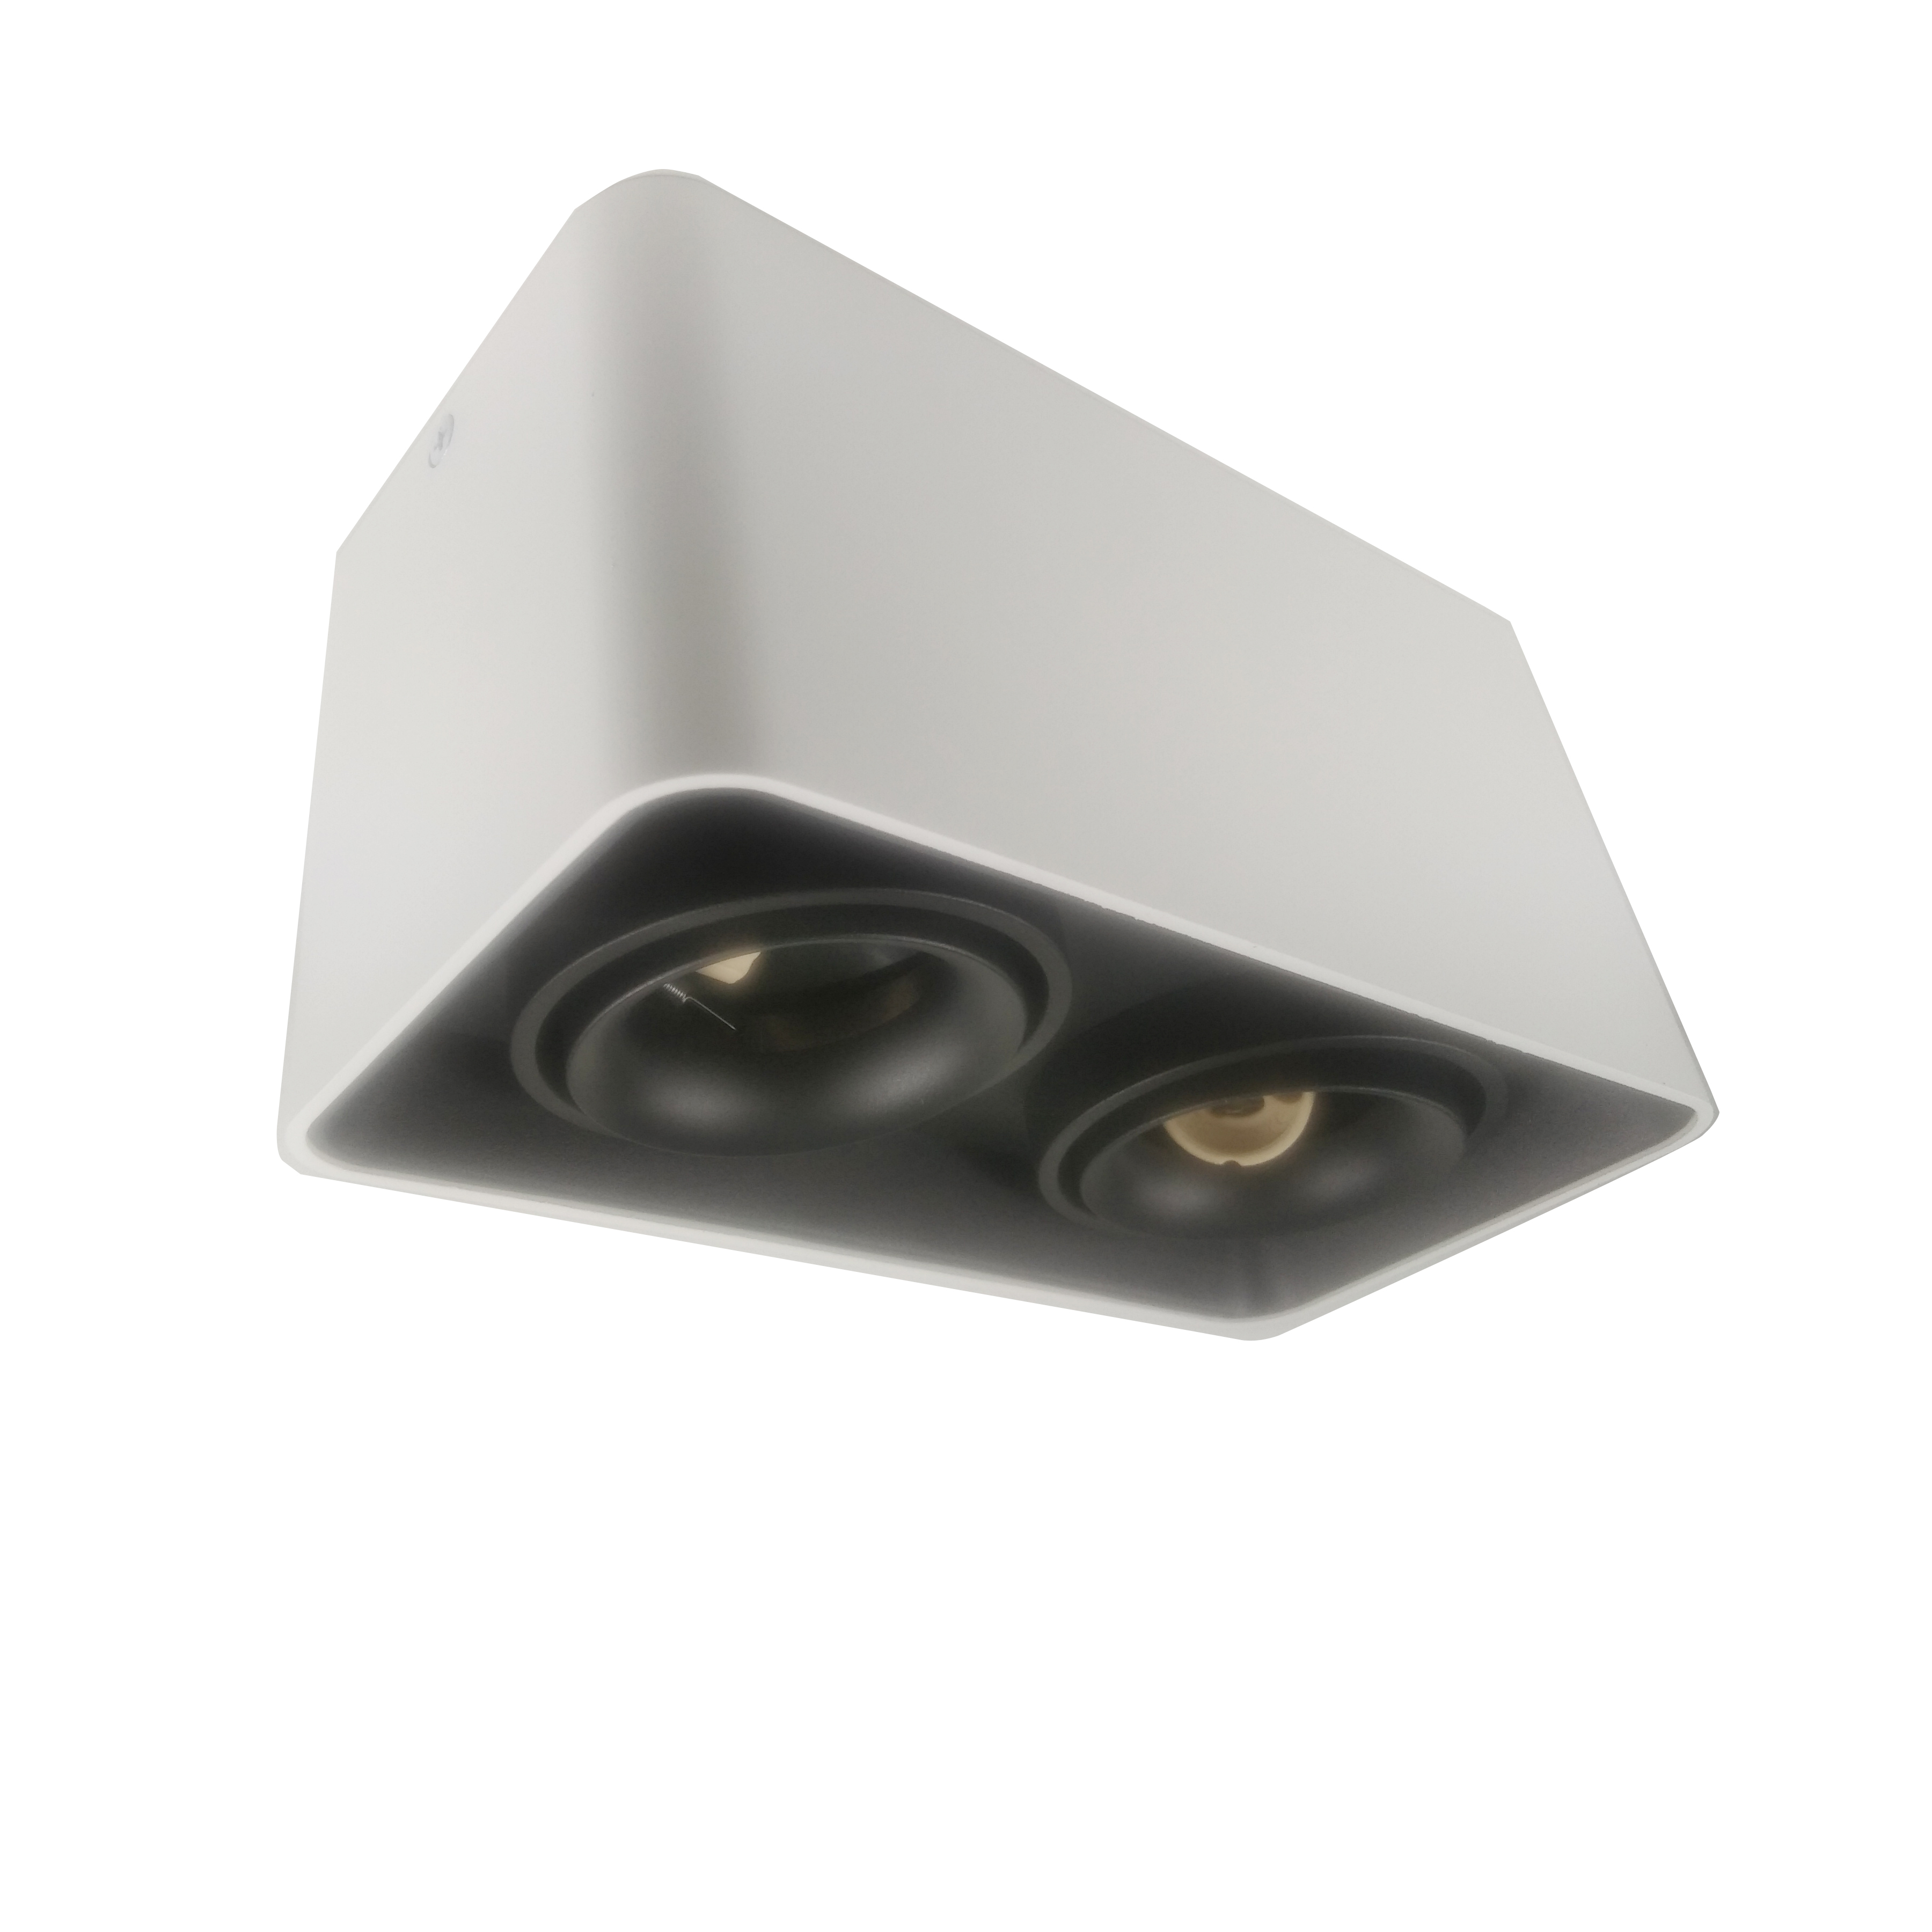 White or Black Rectangle TWO Heads Surface Spot Light Downlight Gu10 MR16 Frame